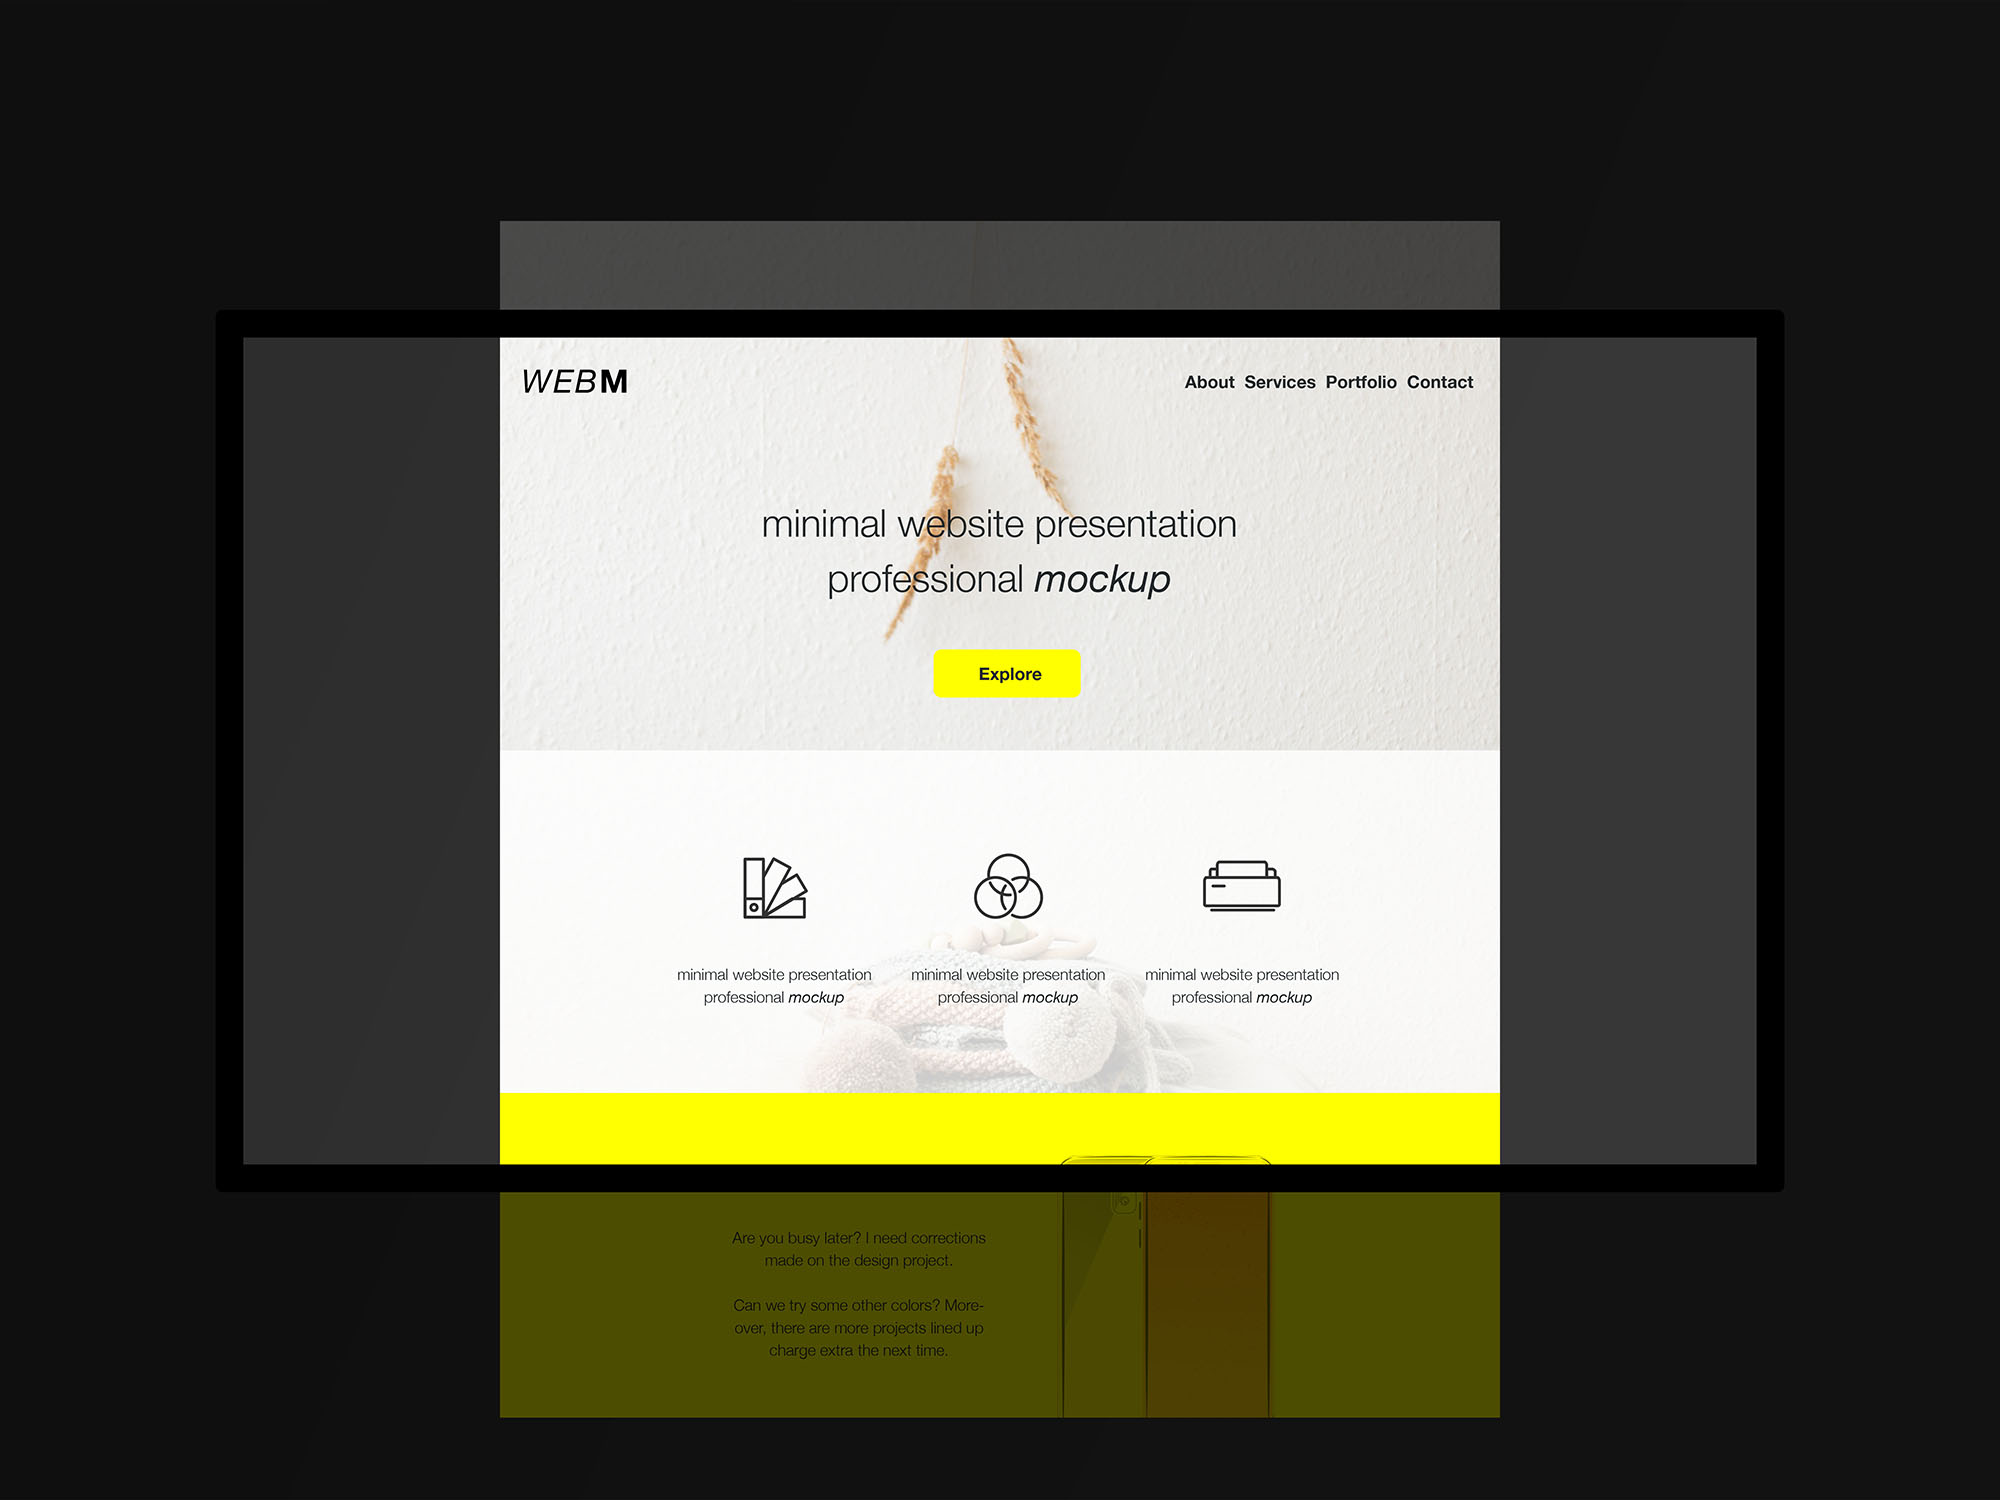 极简主义设计风格扁平化网站设计效果预览样机模板 Minimal Flat Website Presentation Mockup插图(1)